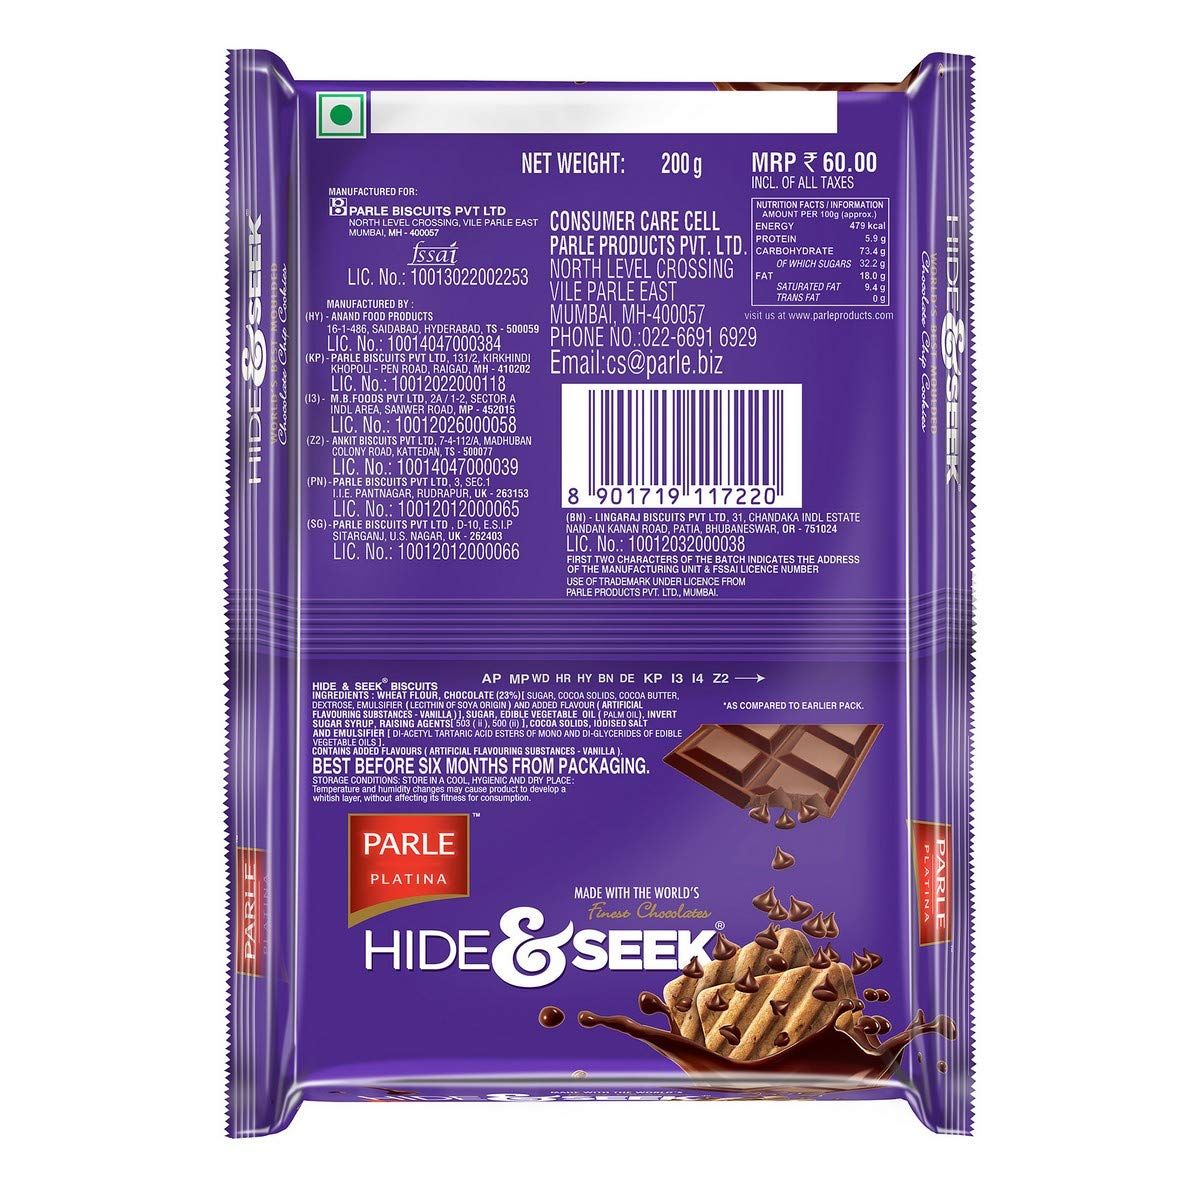 Parle Hide & Seek Chocolate Chip Cookies Image